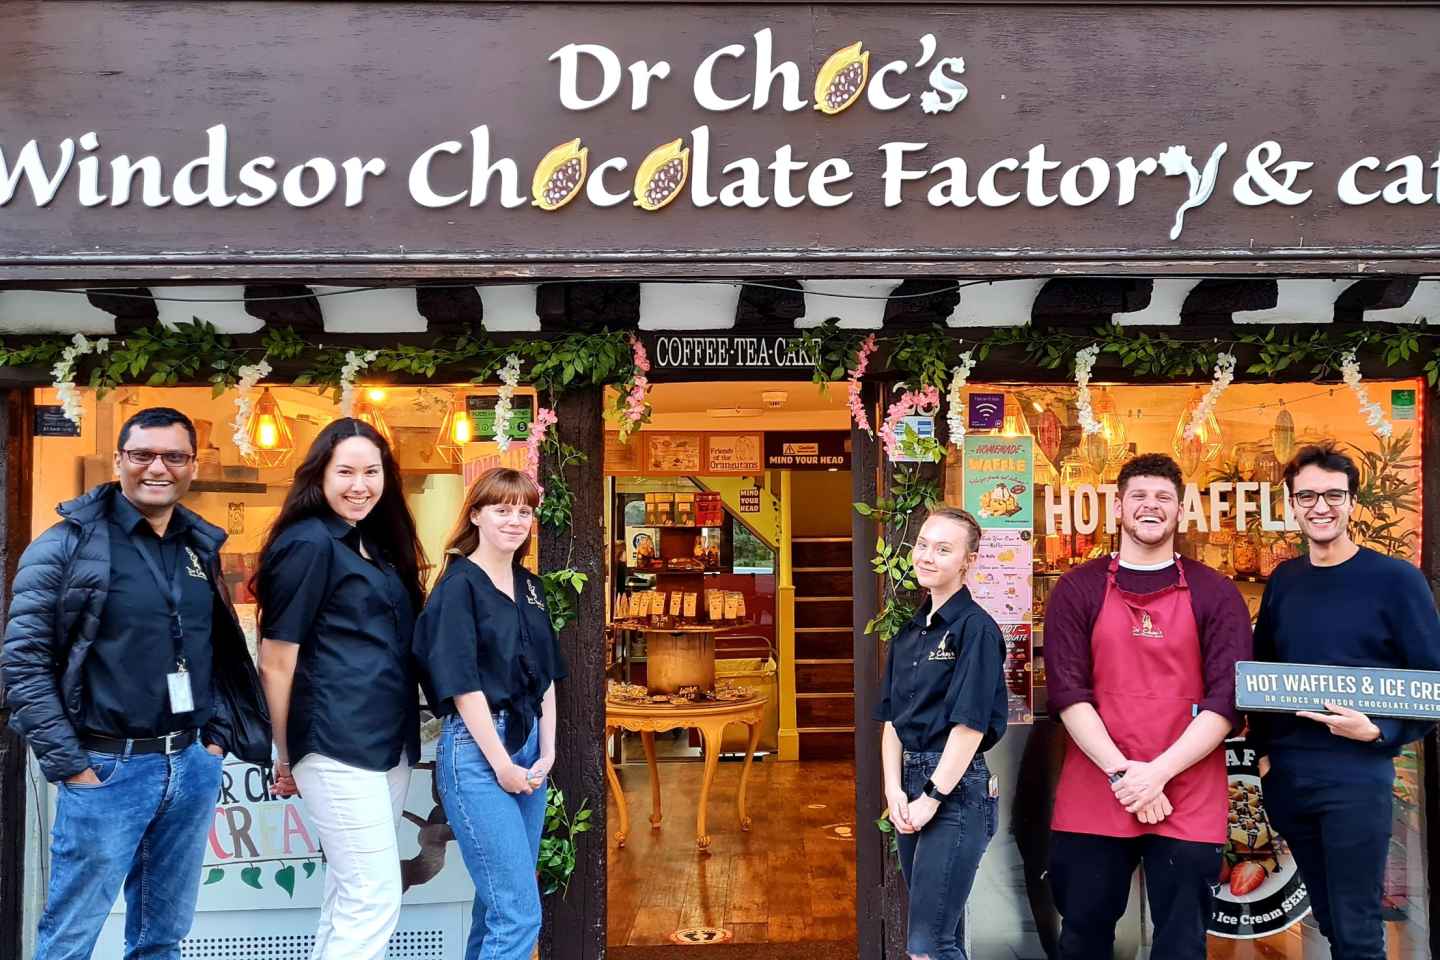 Windsor: seminario sulla preparazione del cioccolato espresso del dottor Choc